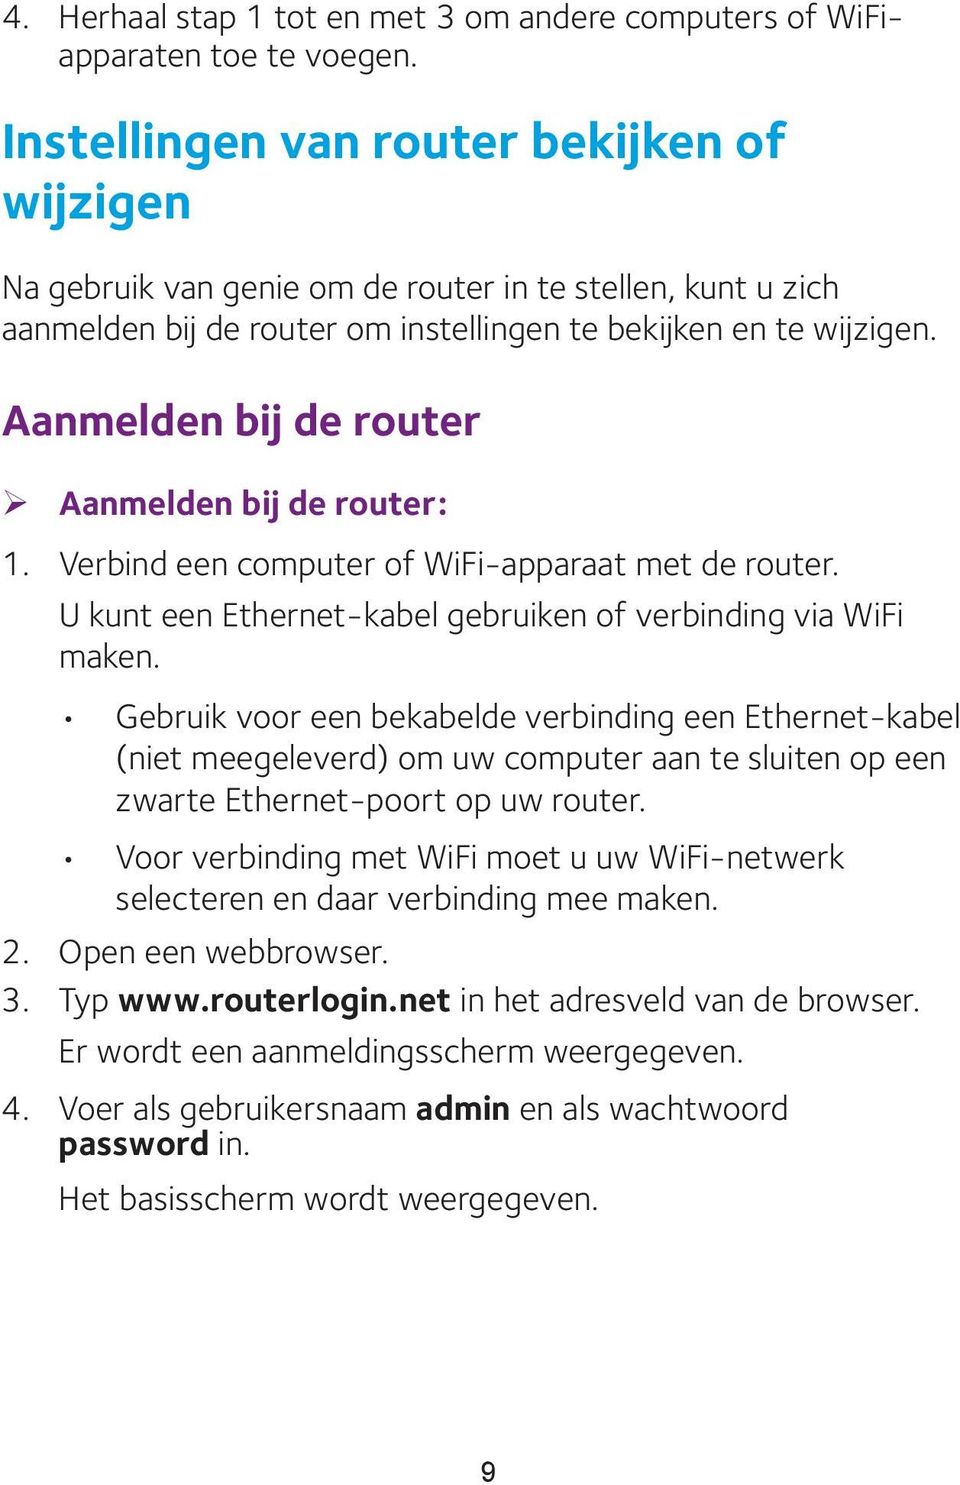 Aanmelden bij de router ¾ Aanmelden bij de router: 1. Verbind een computer of WiFi-apparaat met de router. U kunt een Ethernet-kabel gebruiken of verbinding via WiFi maken.